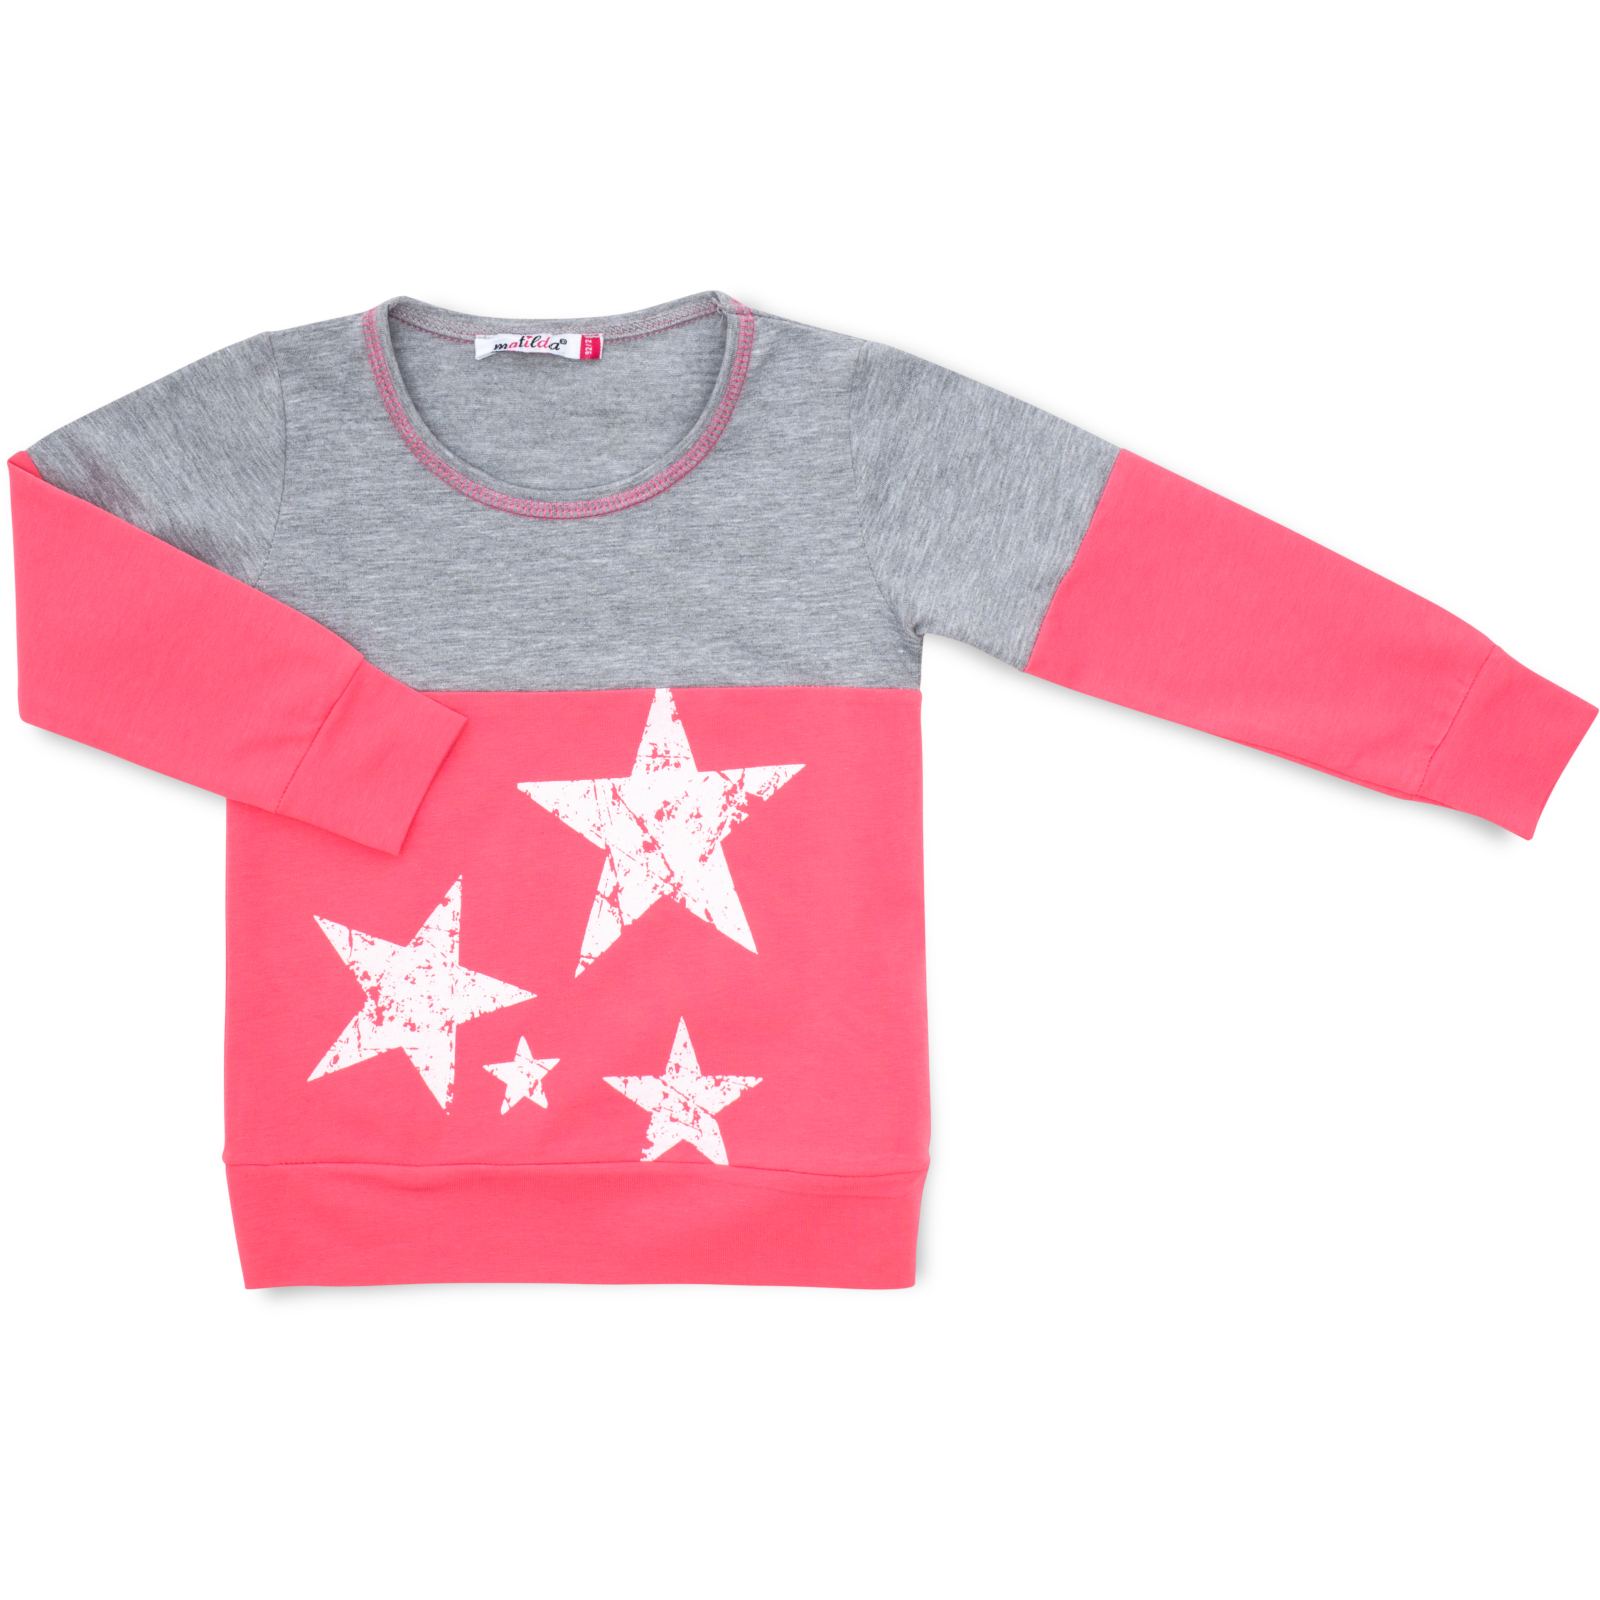 Пижама Matilda со звездочками (7167-98G-pink) изображение 2